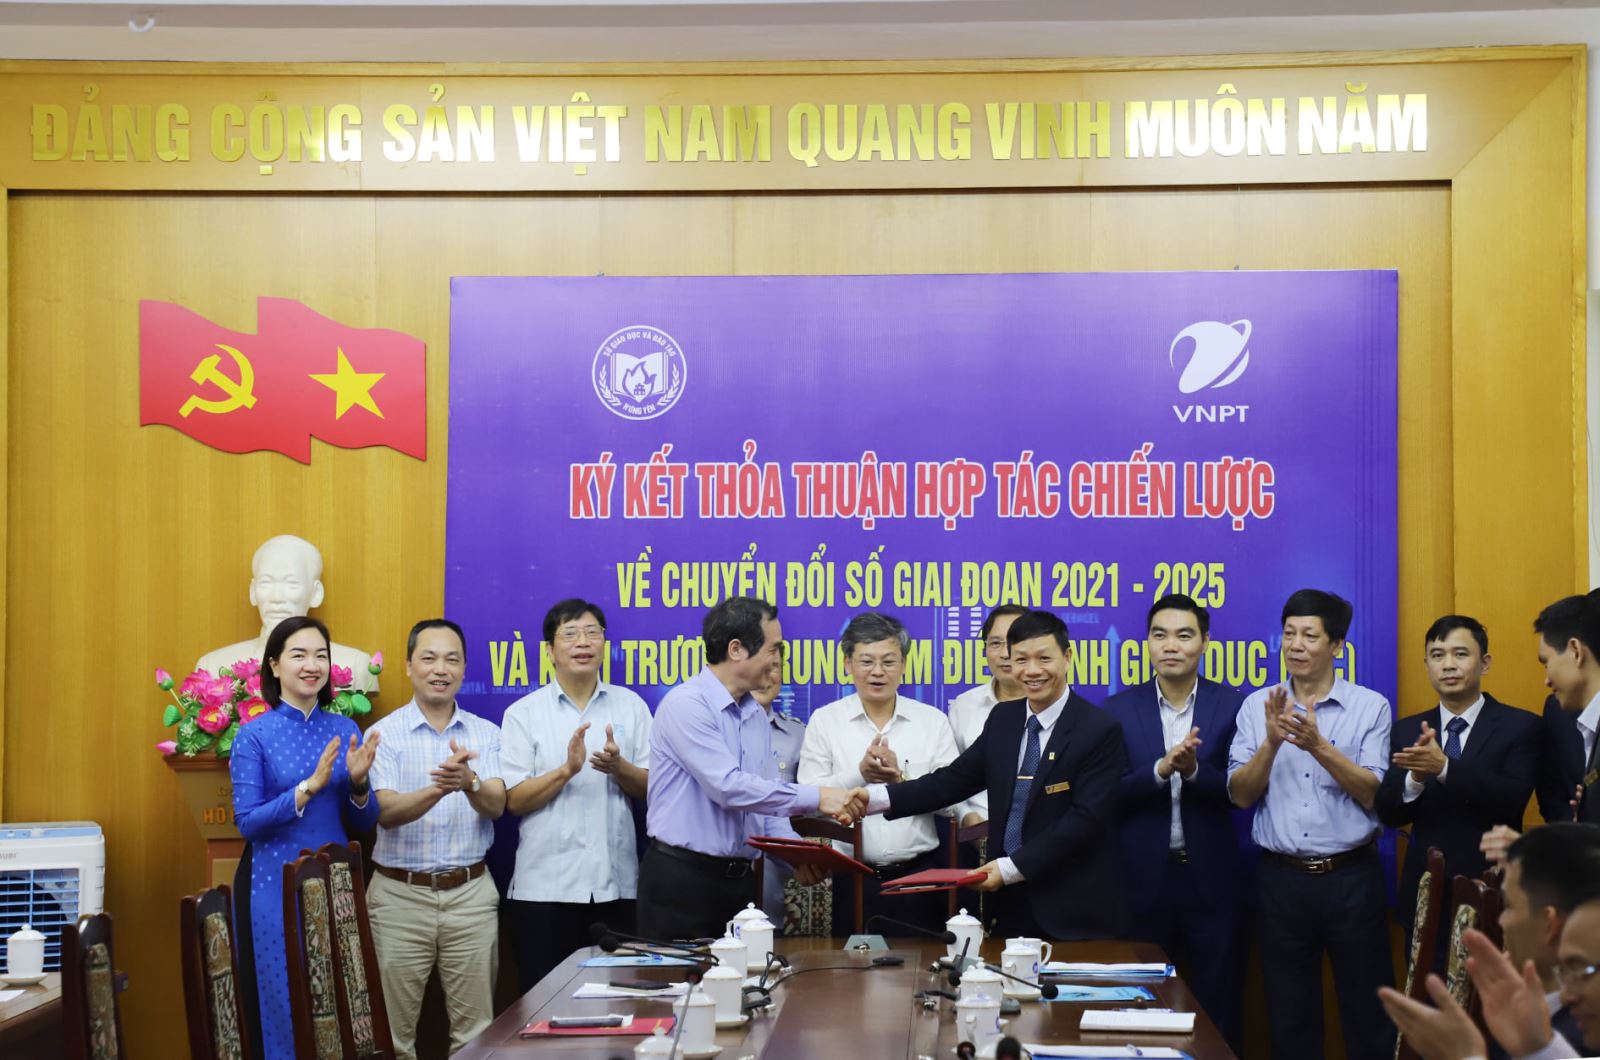 VNPT Hưng Yên ký kết thỏa thuận hợp tác chiến lược về chuyển đổi số giai đoạn 2021-2025 với Sở GD-ĐT và khai trương Trung tâm Điều hành giáo dục